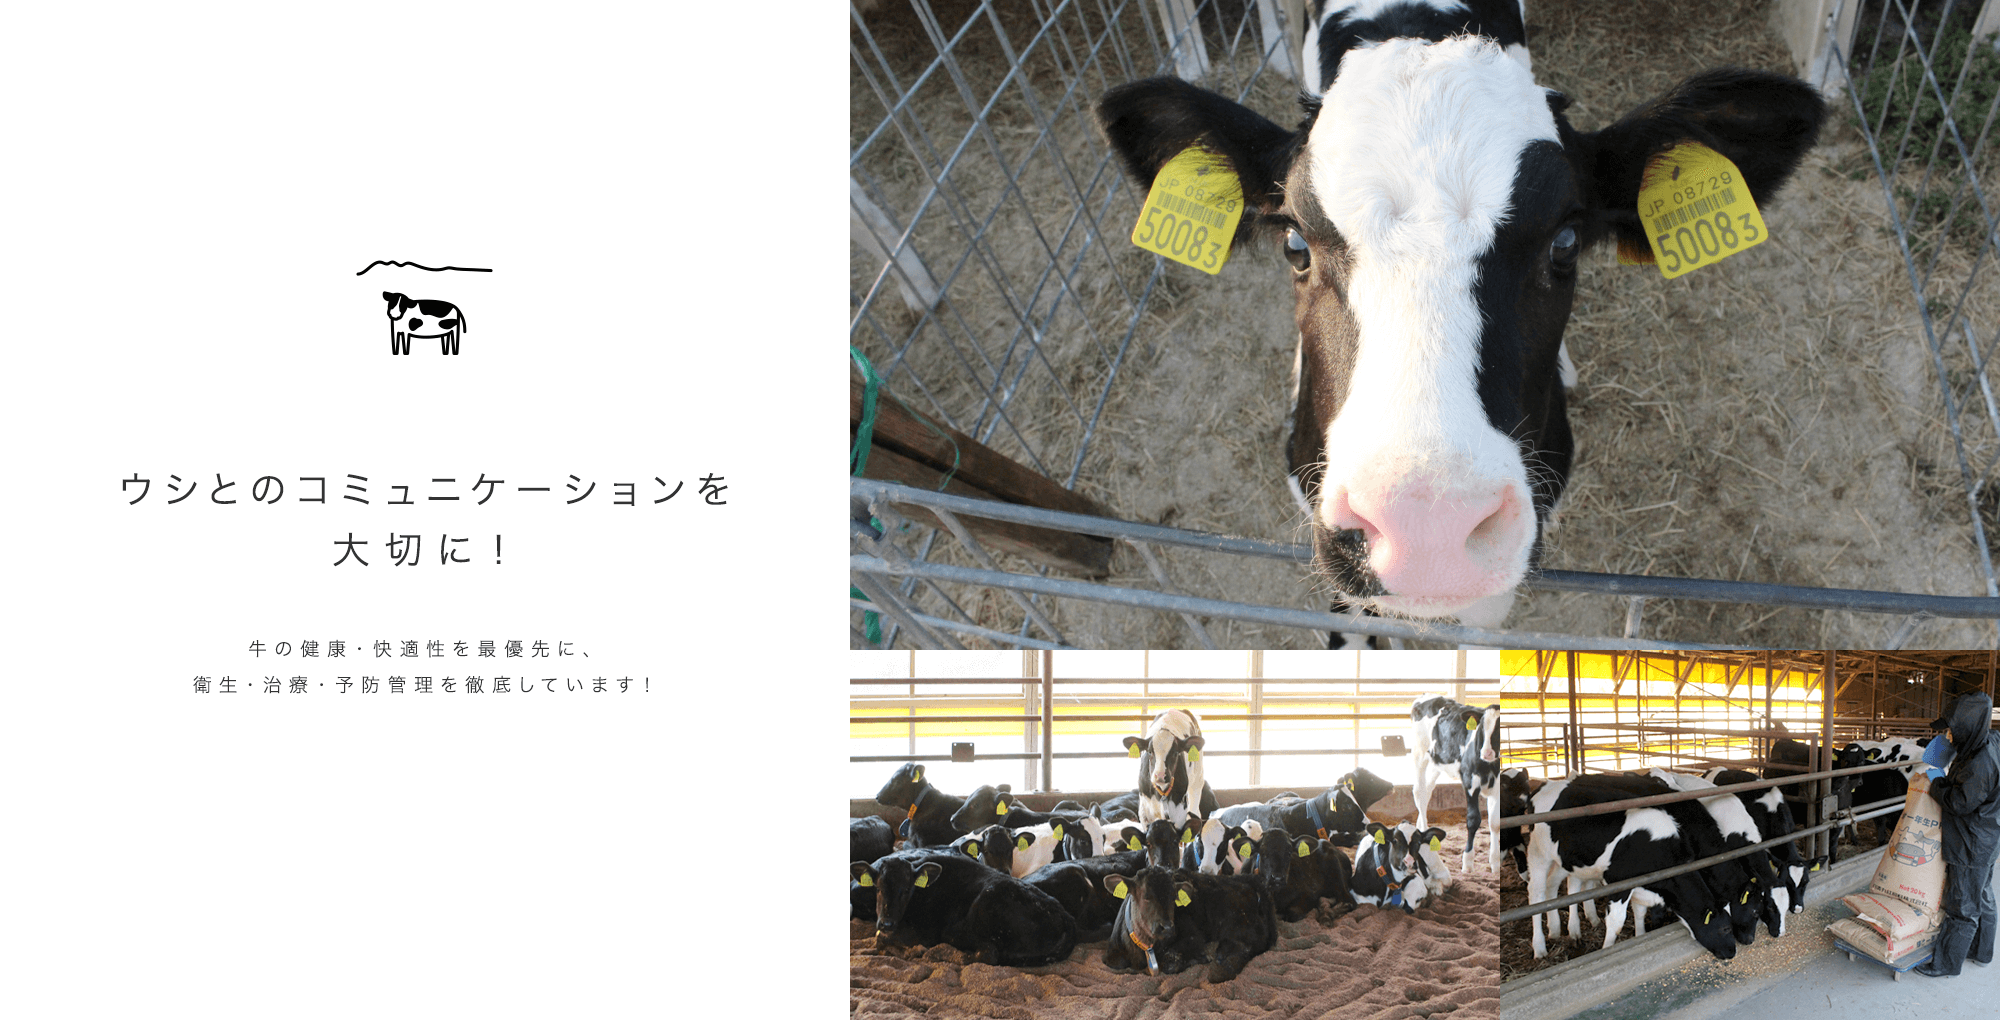 ウシとのコミュニケーションを大切に！ 牛の健康・快適性を最優先に、衛生・治療・予防管理を徹底しています！